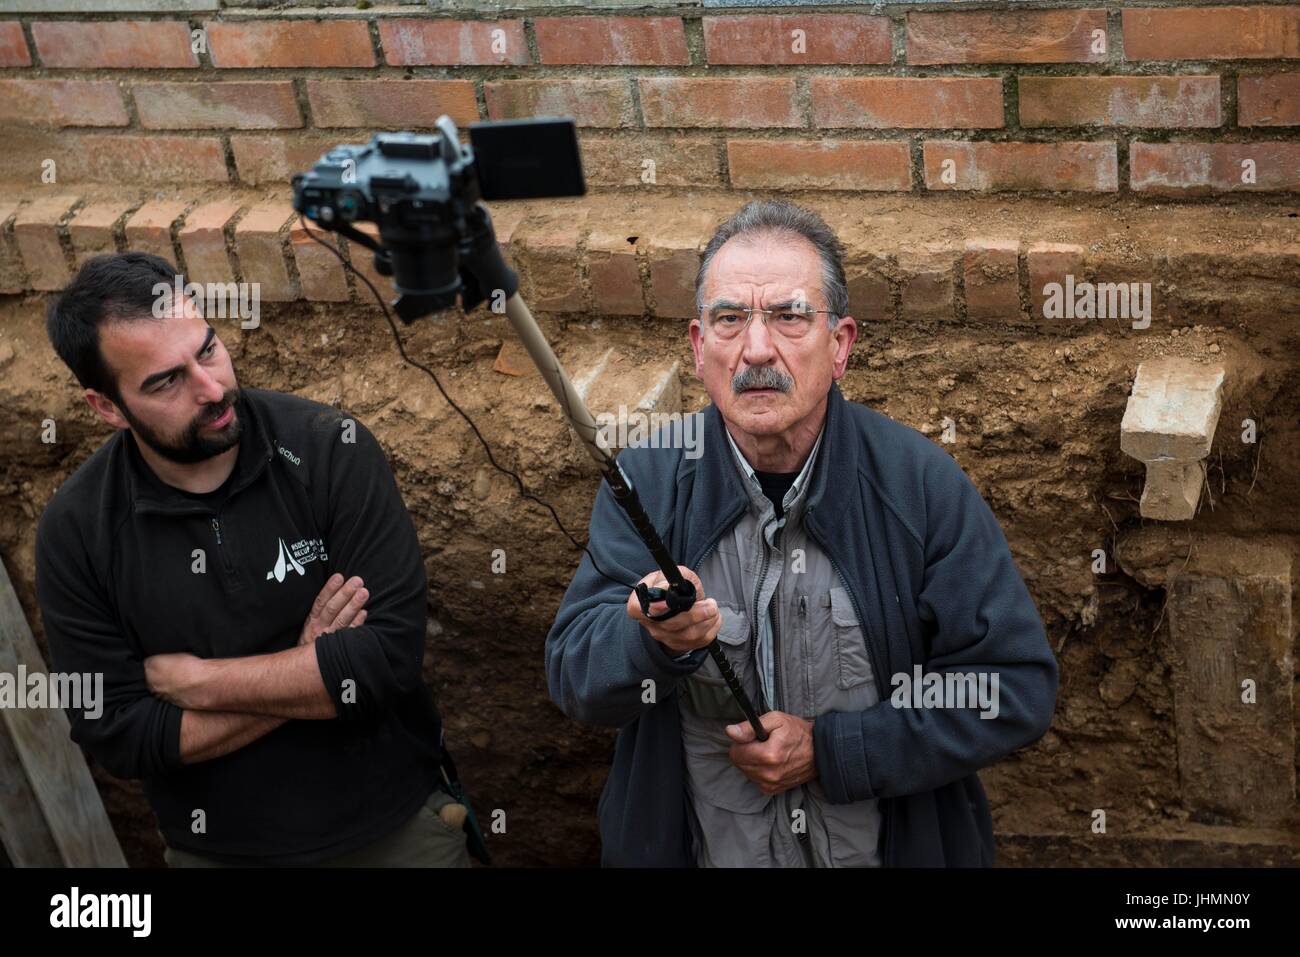 Mayo 12, 2017 - Guadalajara, España - Oscar Rodríguez Alonso fue el  fotógrafo de la exhumación.documenta el aspecto técnico y humano en la  dig.mayo de 2017. La exhumación de Timoteo Mendieta en